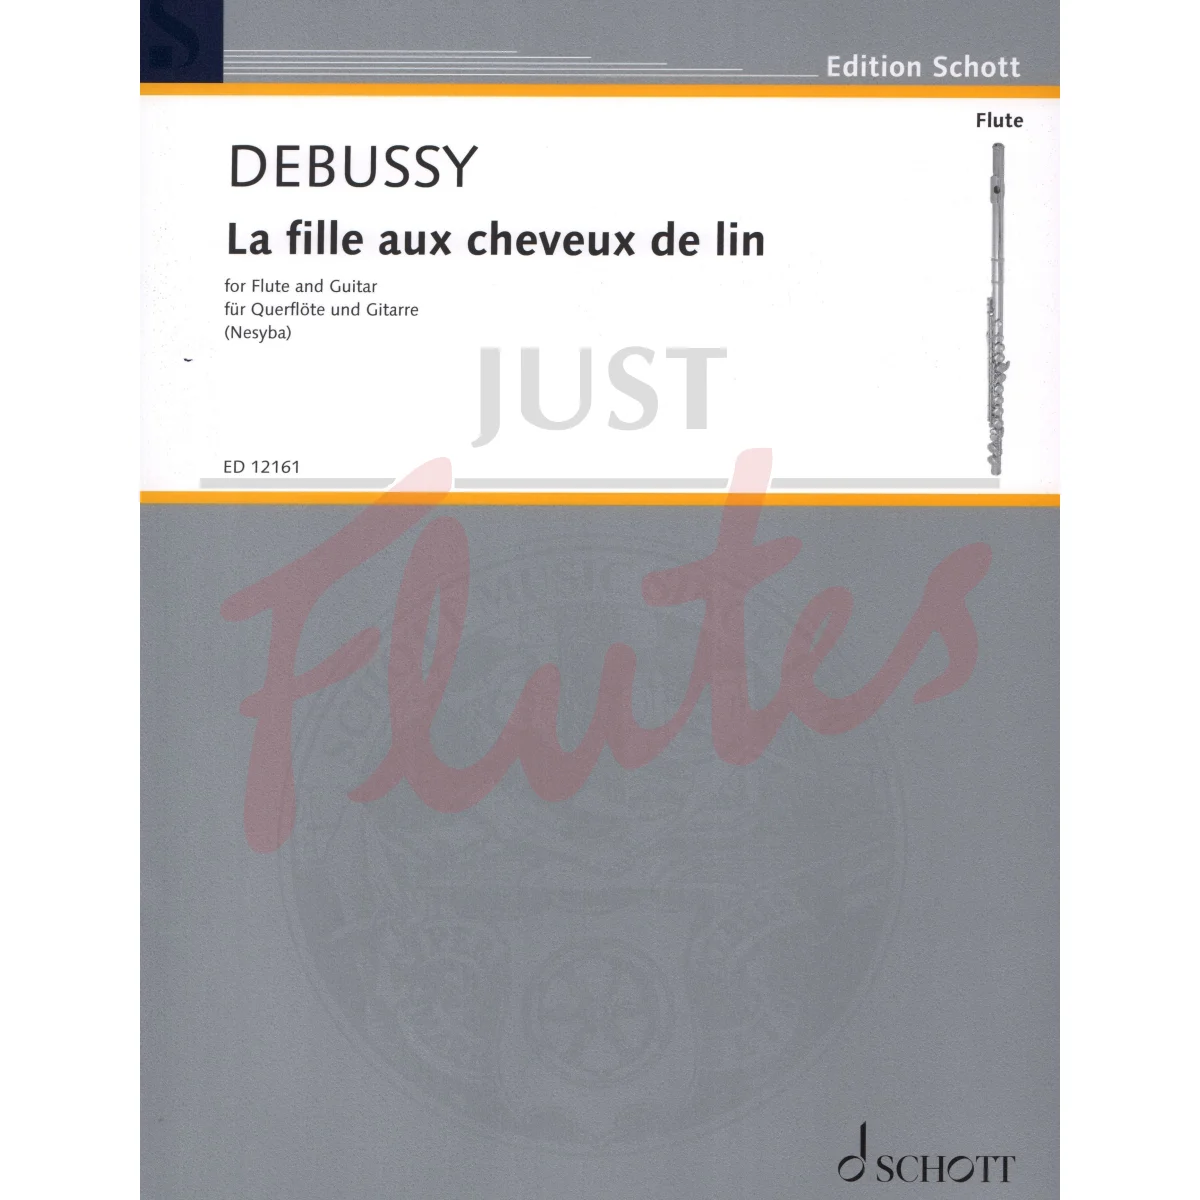 La Fille aux Cheveaux de Lin for Flute and Guitar